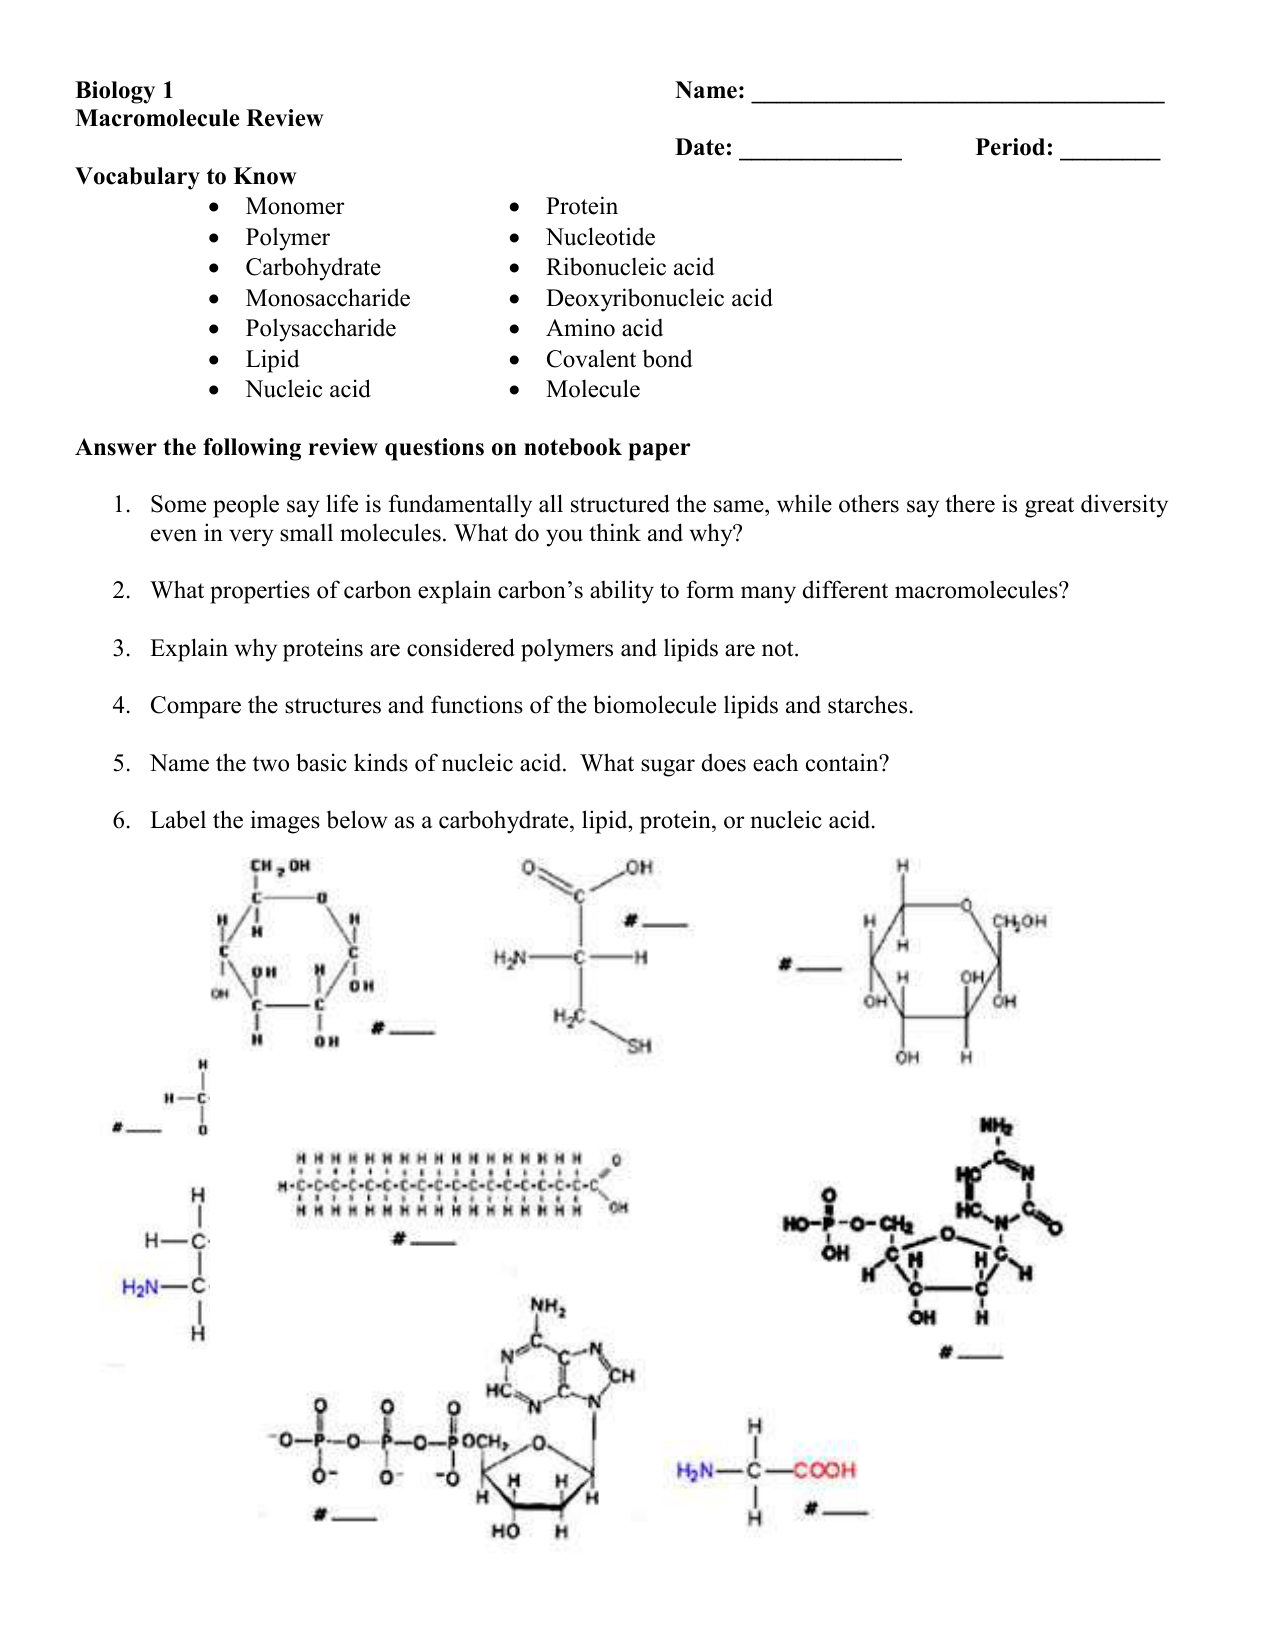 Biology Macromolecule Review Worksheet — db-excel.com